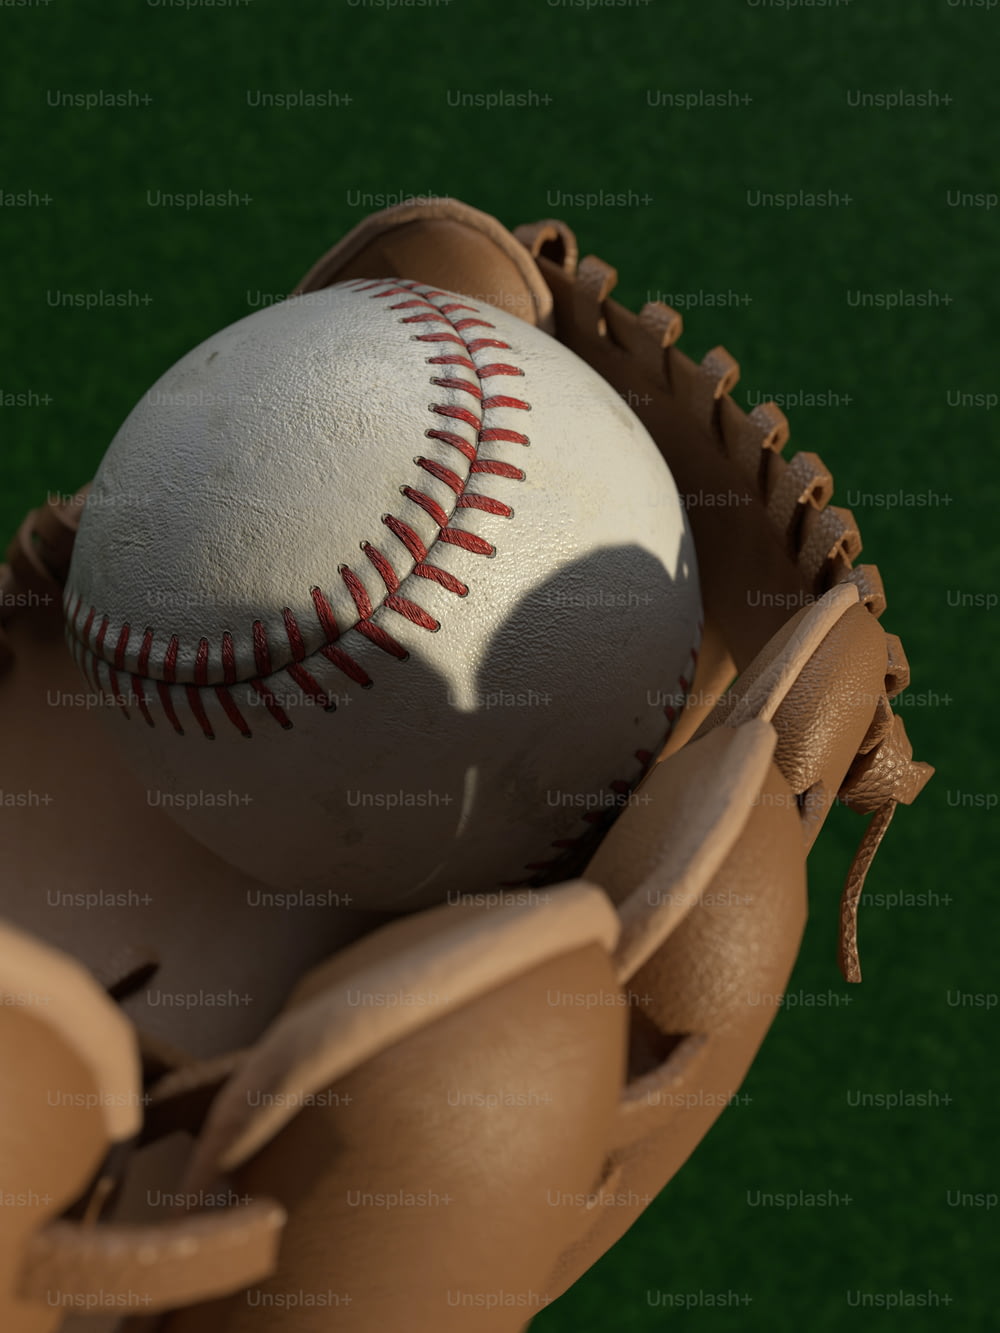 Une balle de baseball dans un gant sur un terrain vert